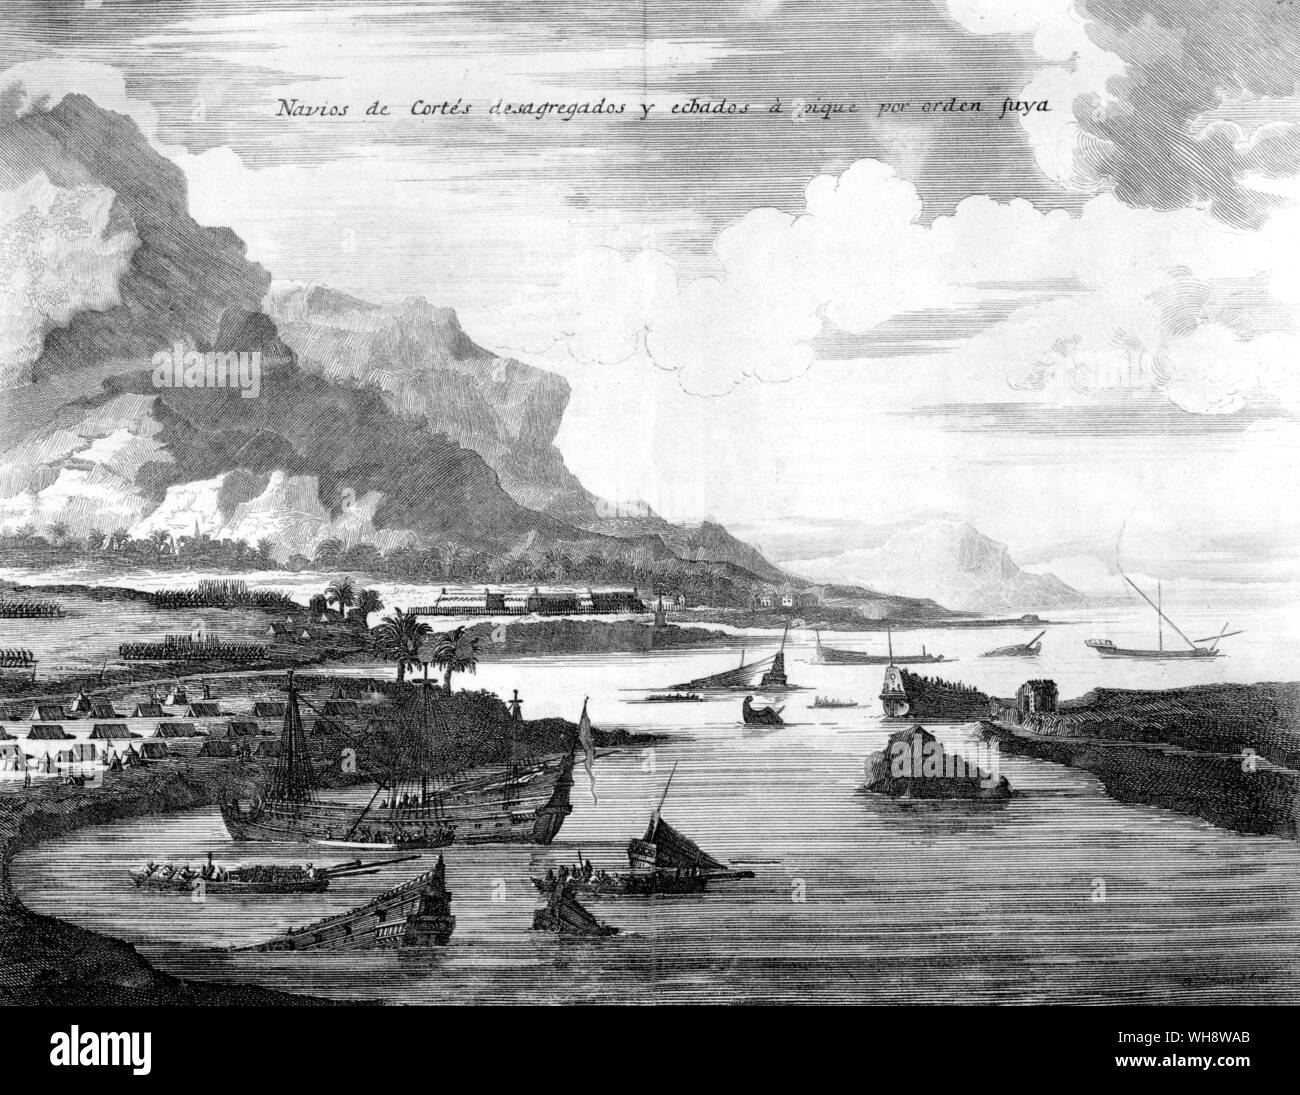 Cortes affonda sue navi. Incisione del XVIII secolo. Antonio de Solis "Historia de la conquista de Mexico' Foto Stock